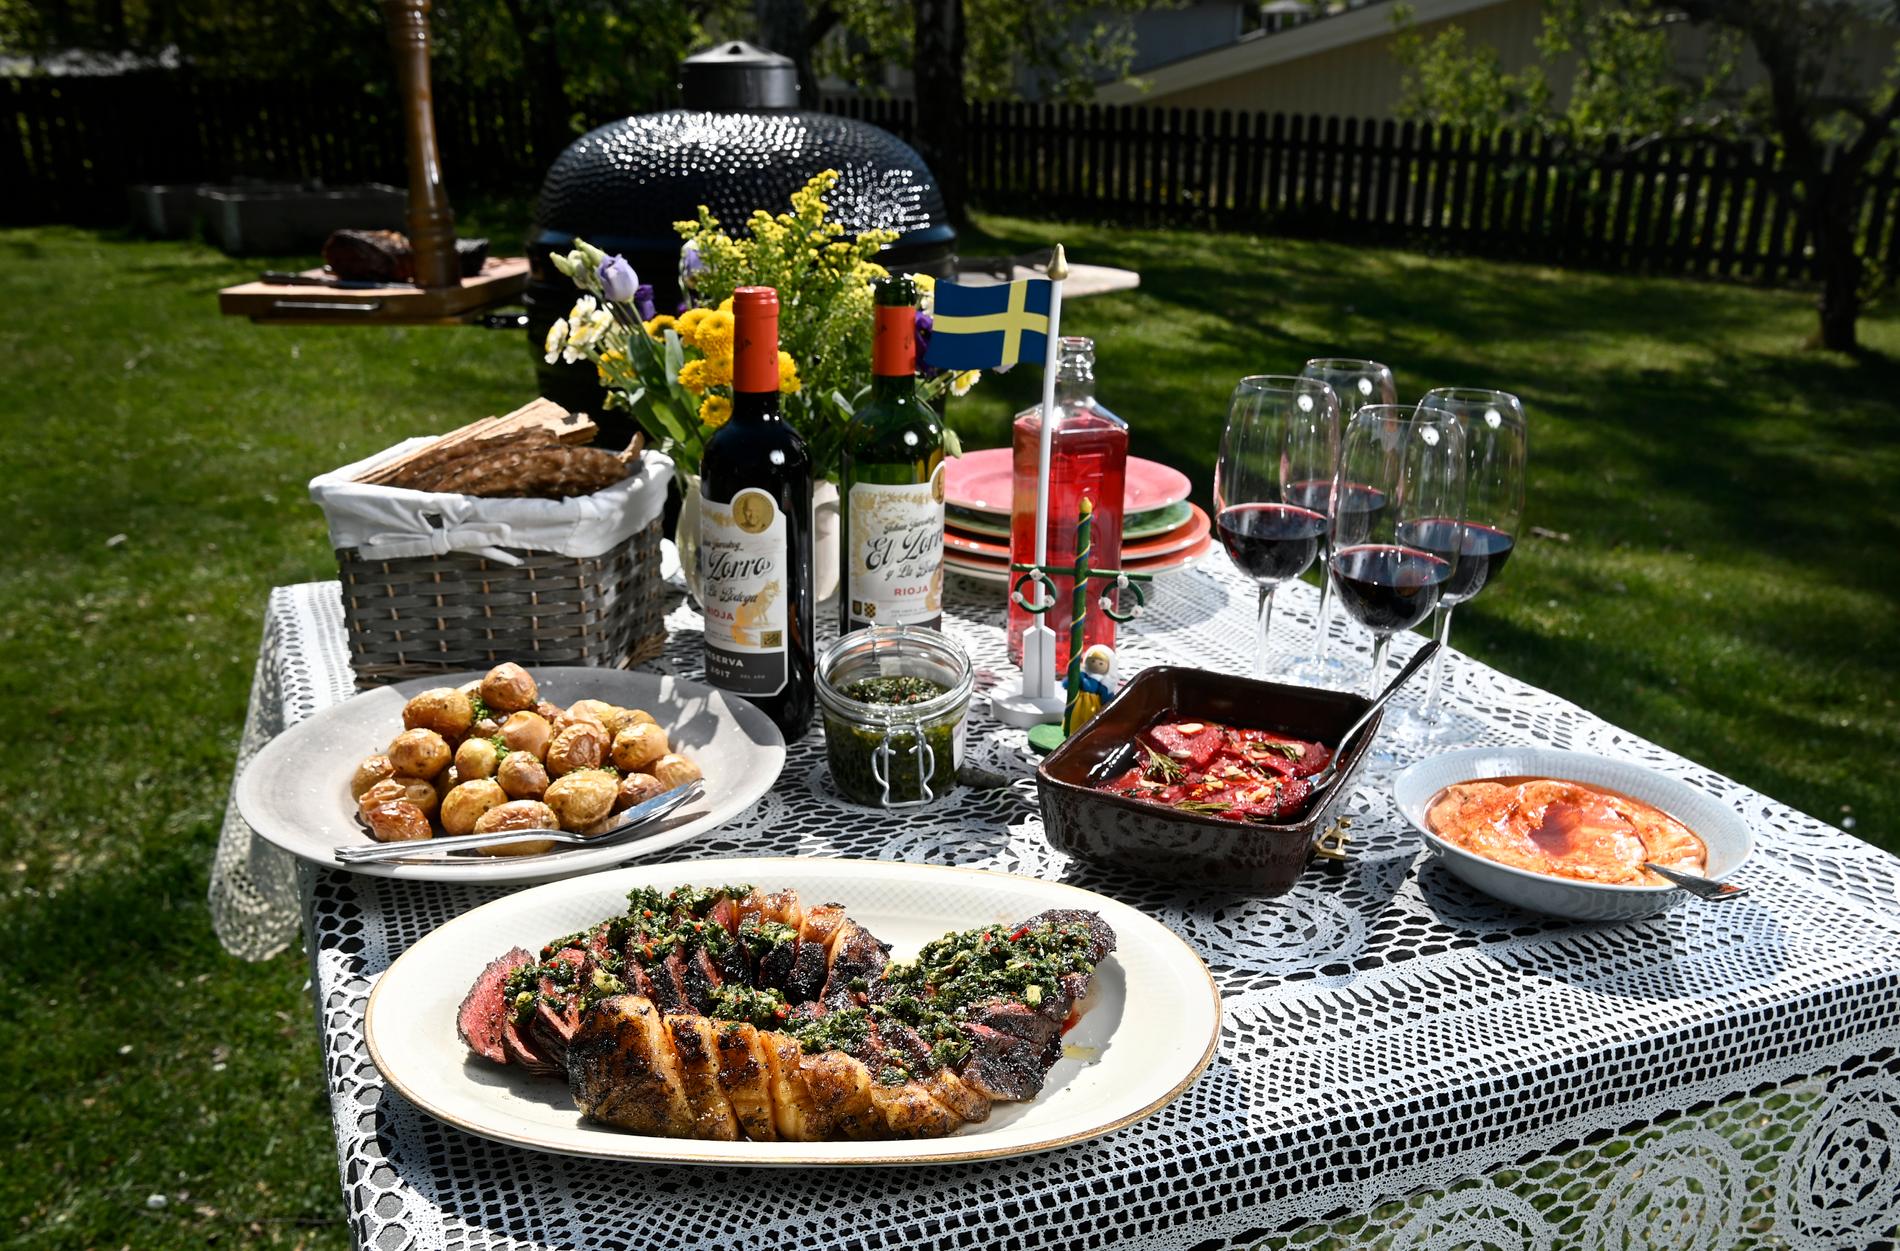 Veckans #Swedengate, om svenskars oförmåga att bjuda på mat, får Nioosha Shams att tänka på den iranska kultur hon också har med sig: ”I Iran har vi något som heter ’tarof’. Det handlar om att bråka i en halvtimme om vem som ska få bjuda den andra på restaurangnotan.” Nioosha Shams har även en uppmaning om midsommarfirande.